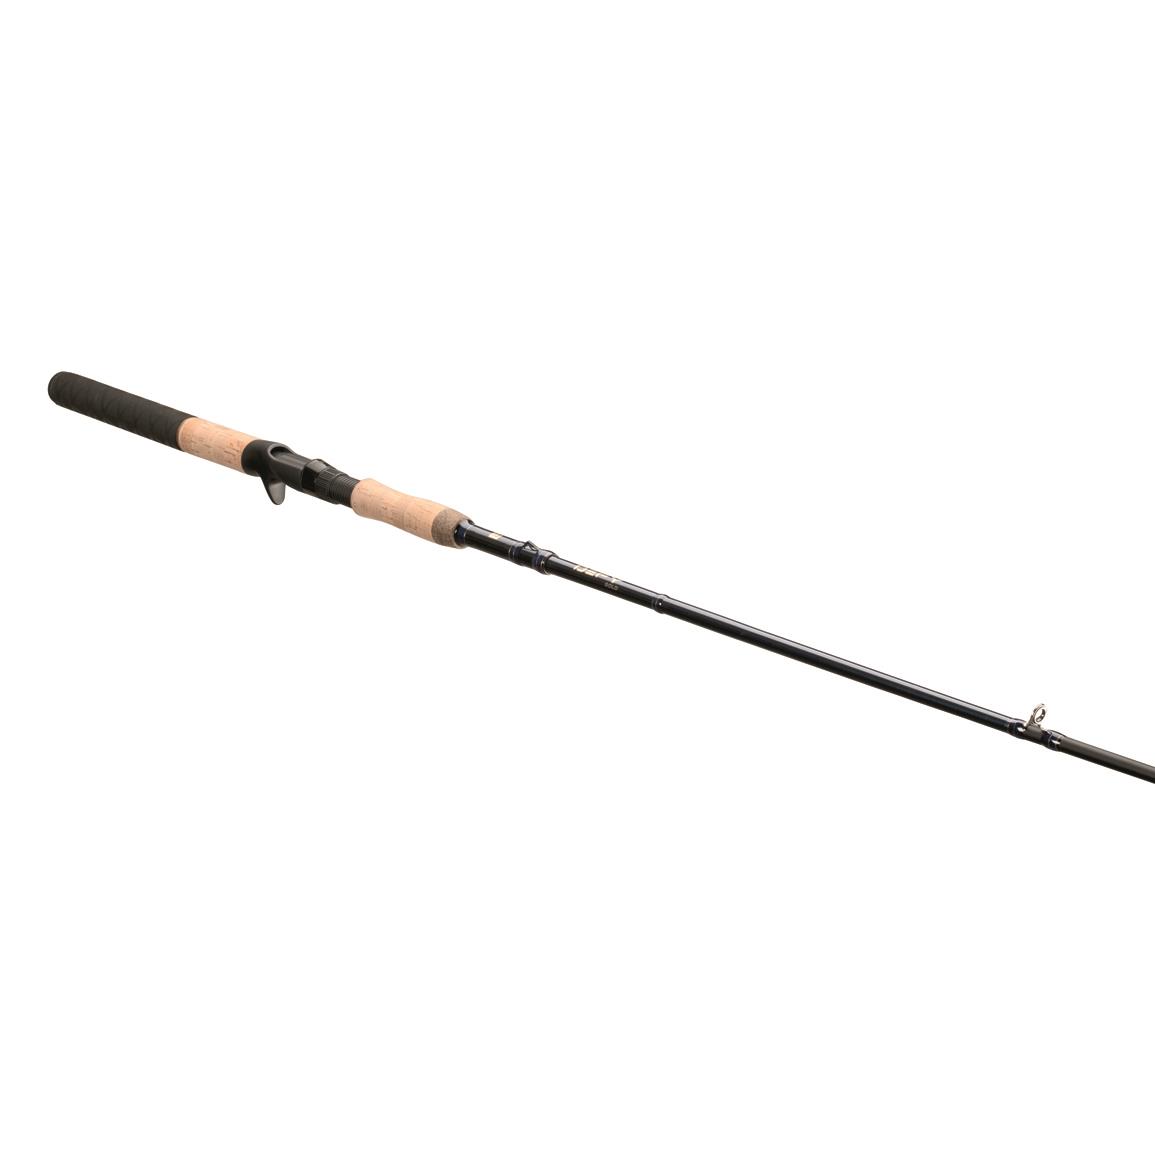 Ugly Stik Walleye Round Fishing Rod Combo - 715406, Trolling